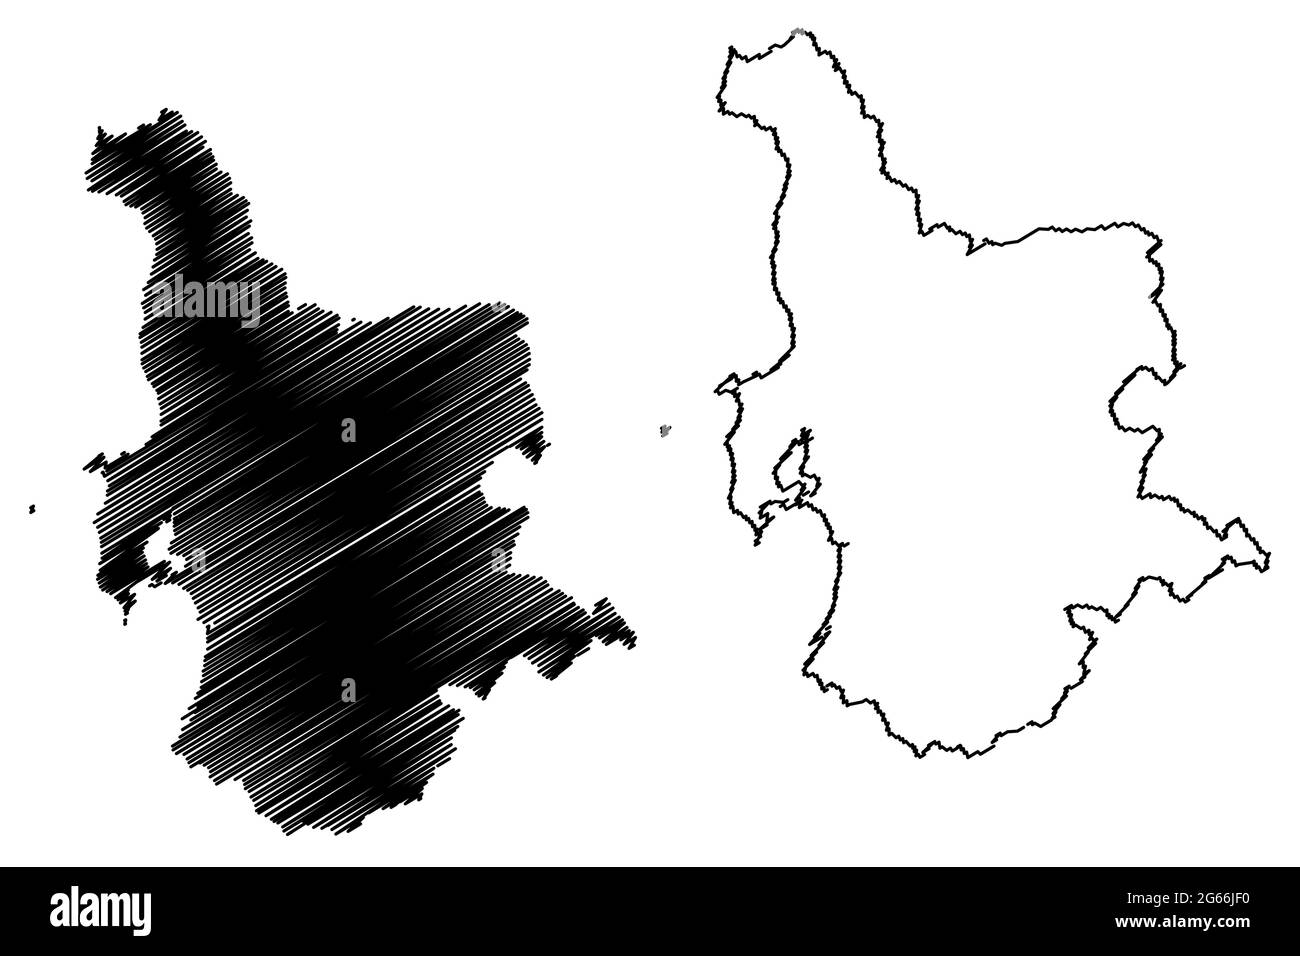 Province d'Oristano (Italie, République italienne, Sardaigne) carte illustration vectorielle, scribble sketch carte de la province d'Oristano Illustration de Vecteur